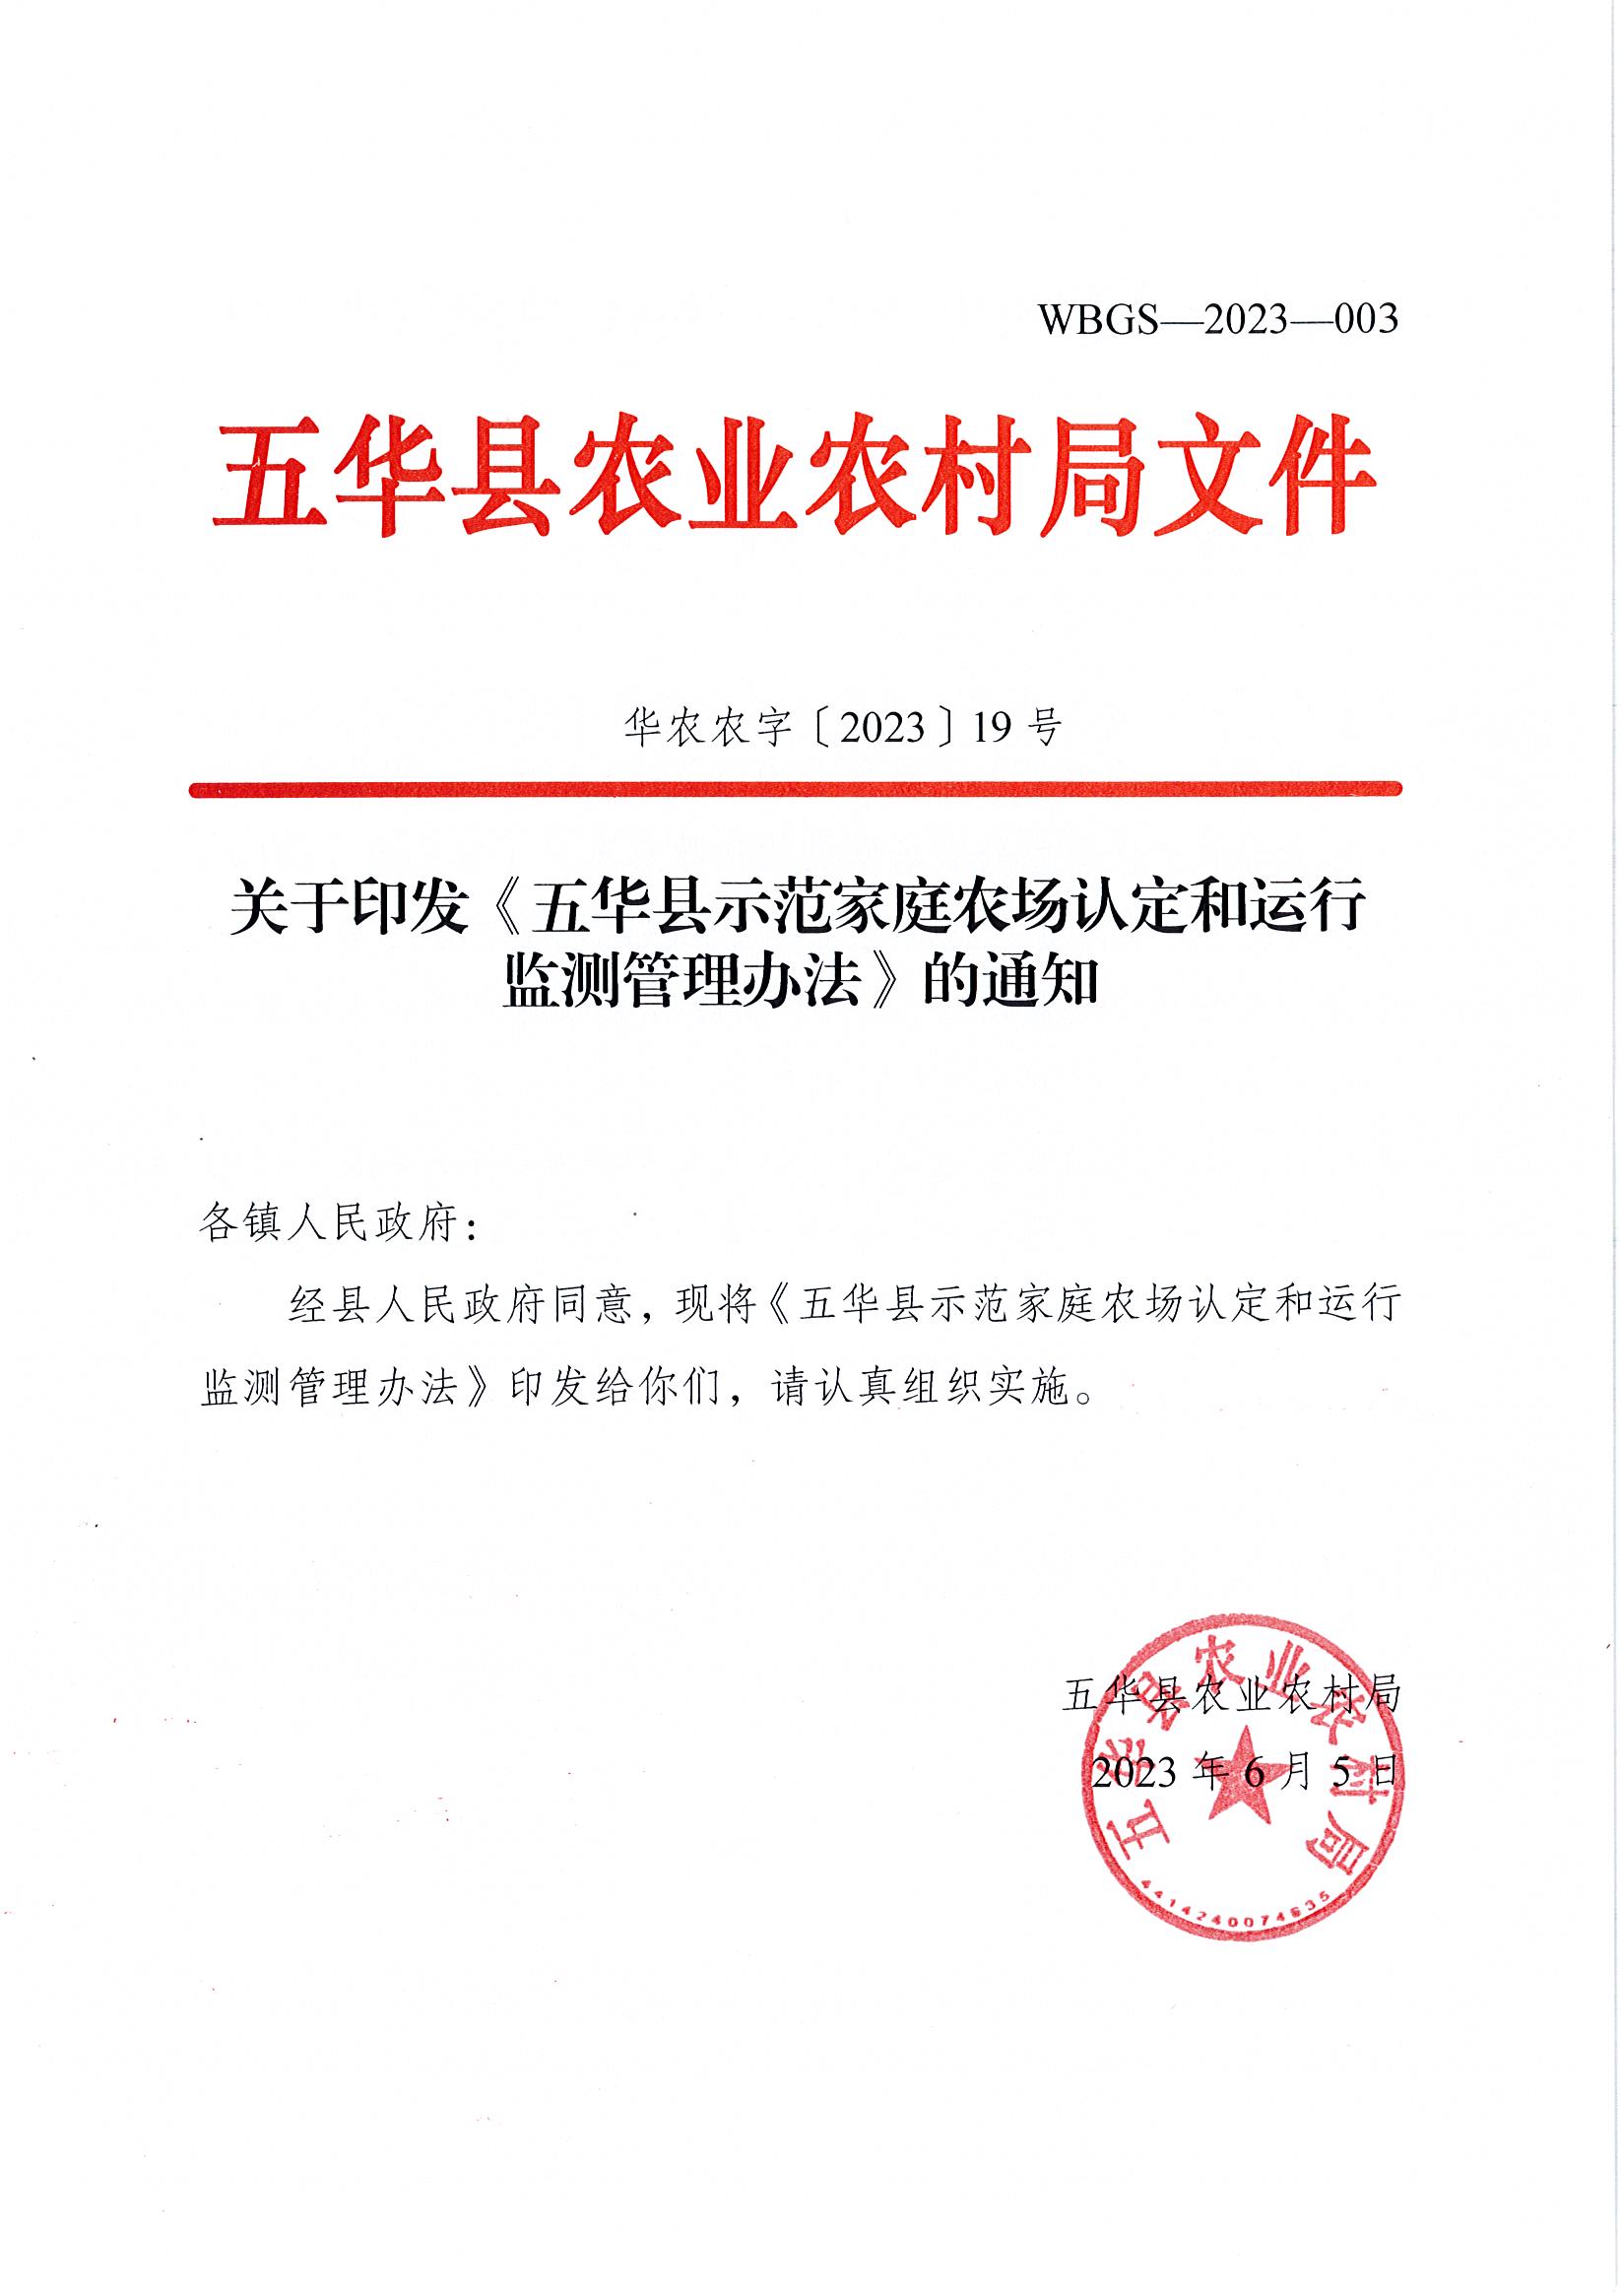 关于印发《五华县示范家庭农场认定和运行监测管理办法》的通知.jpg